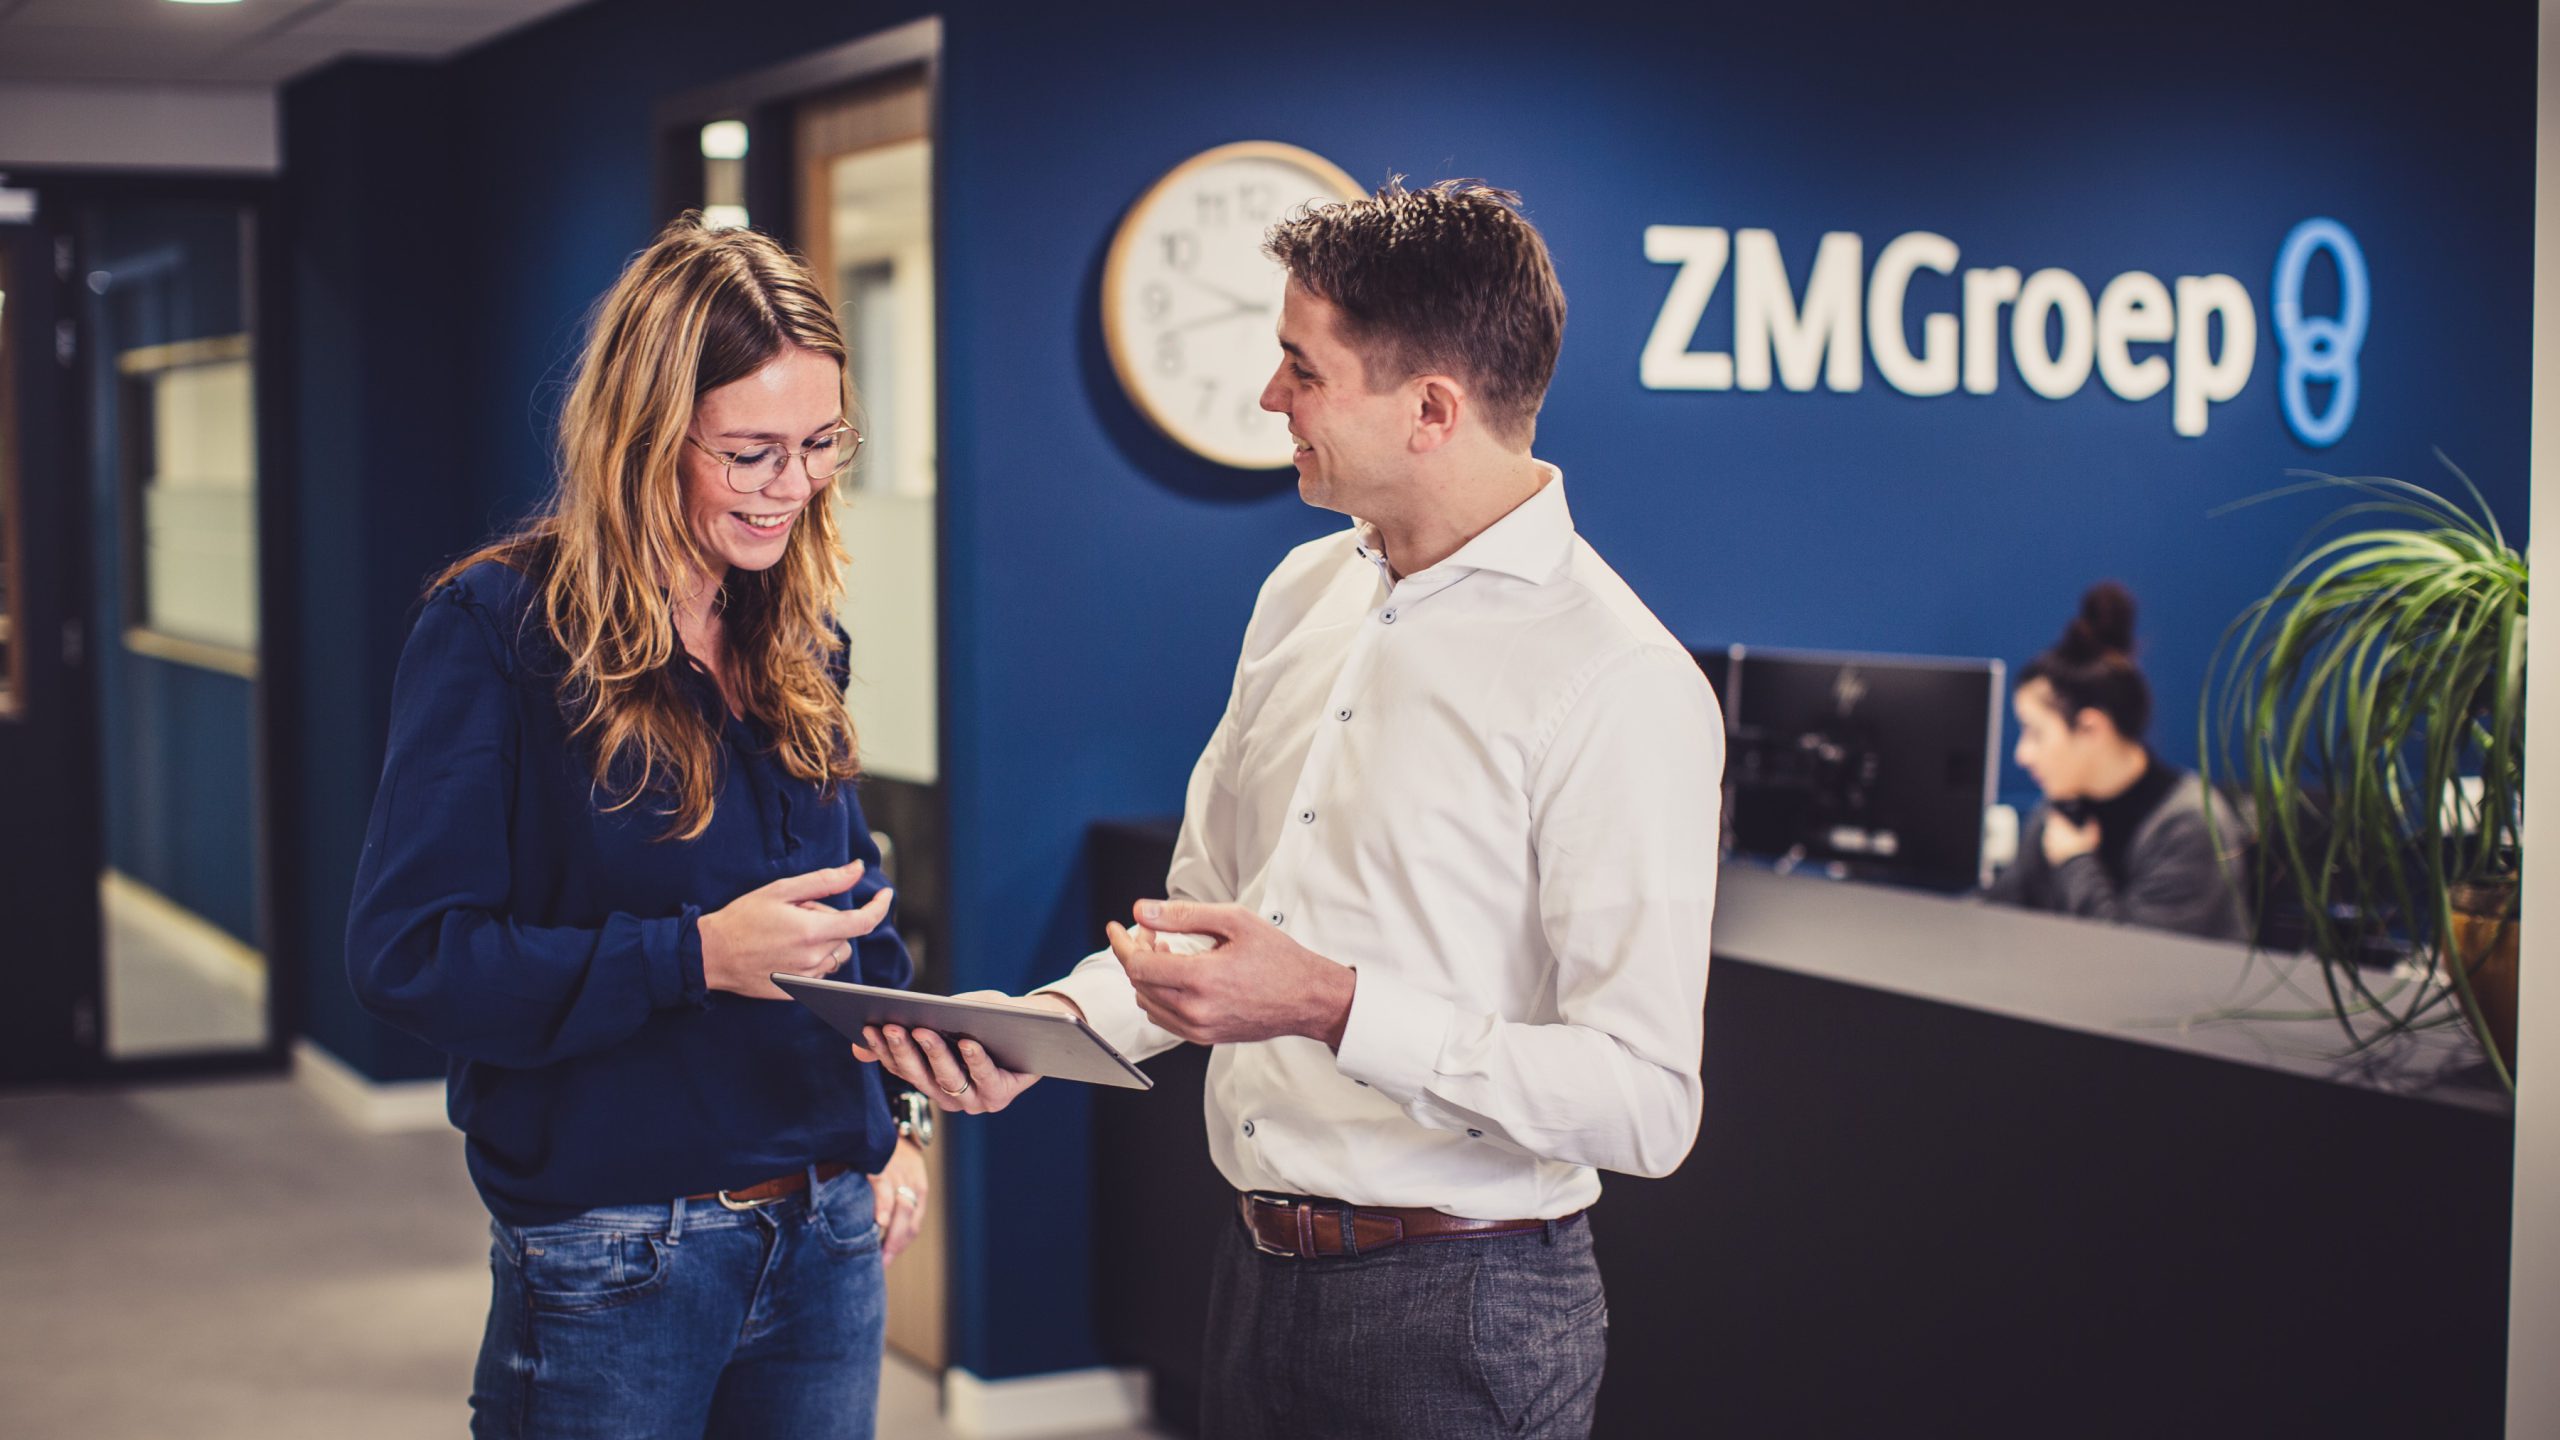 ZMGroep hace negocios claros con TriFact365